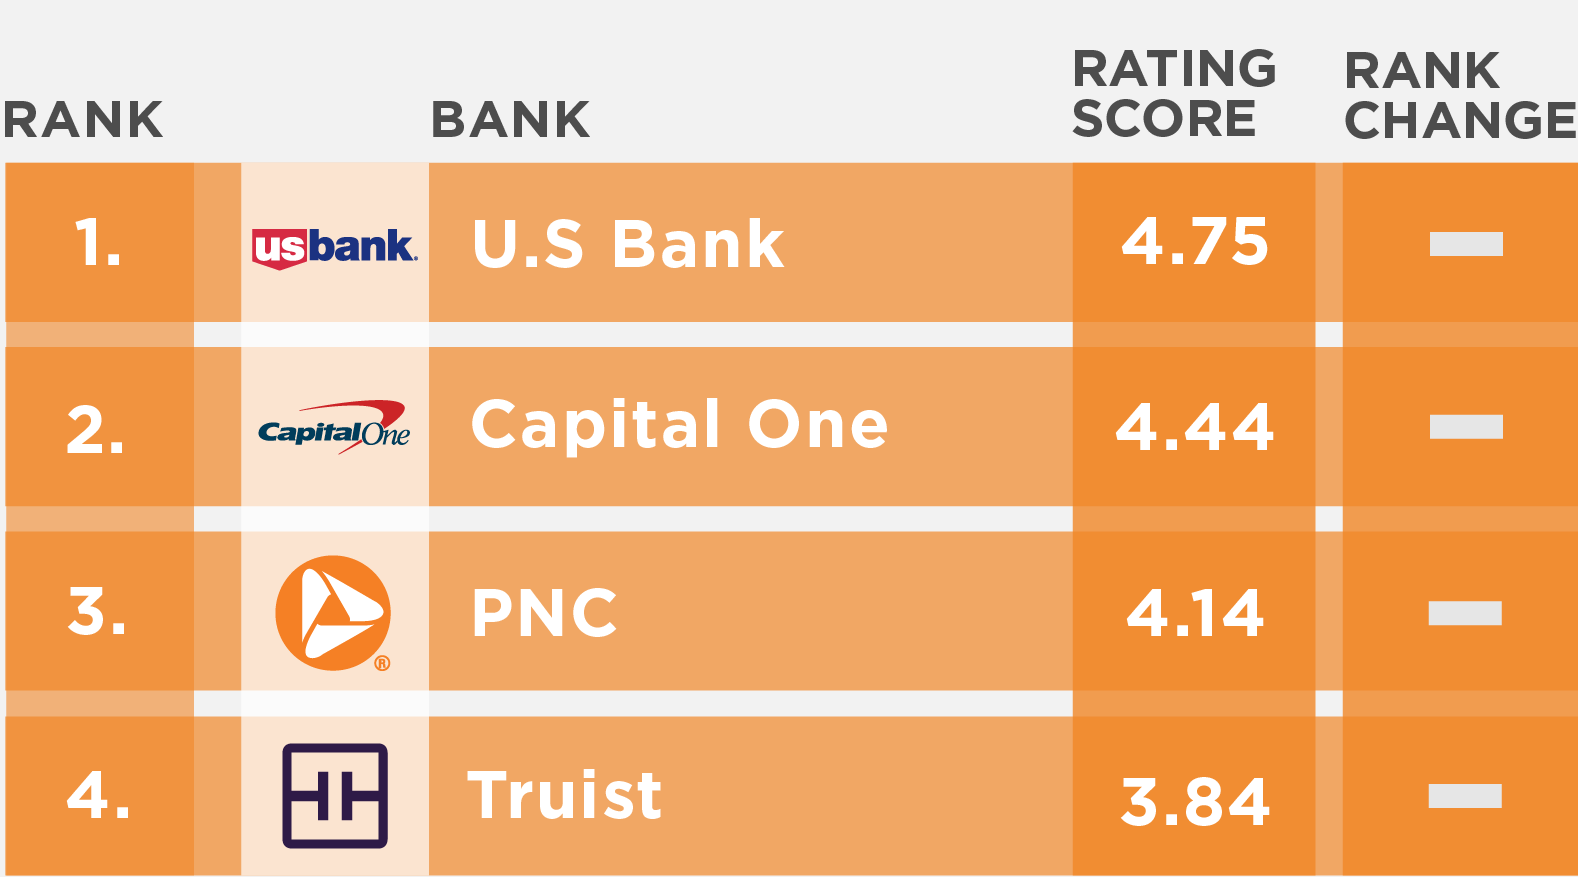 US Tier 1 banks Engaged Customer Score (ECS) performance rankings for September 2022